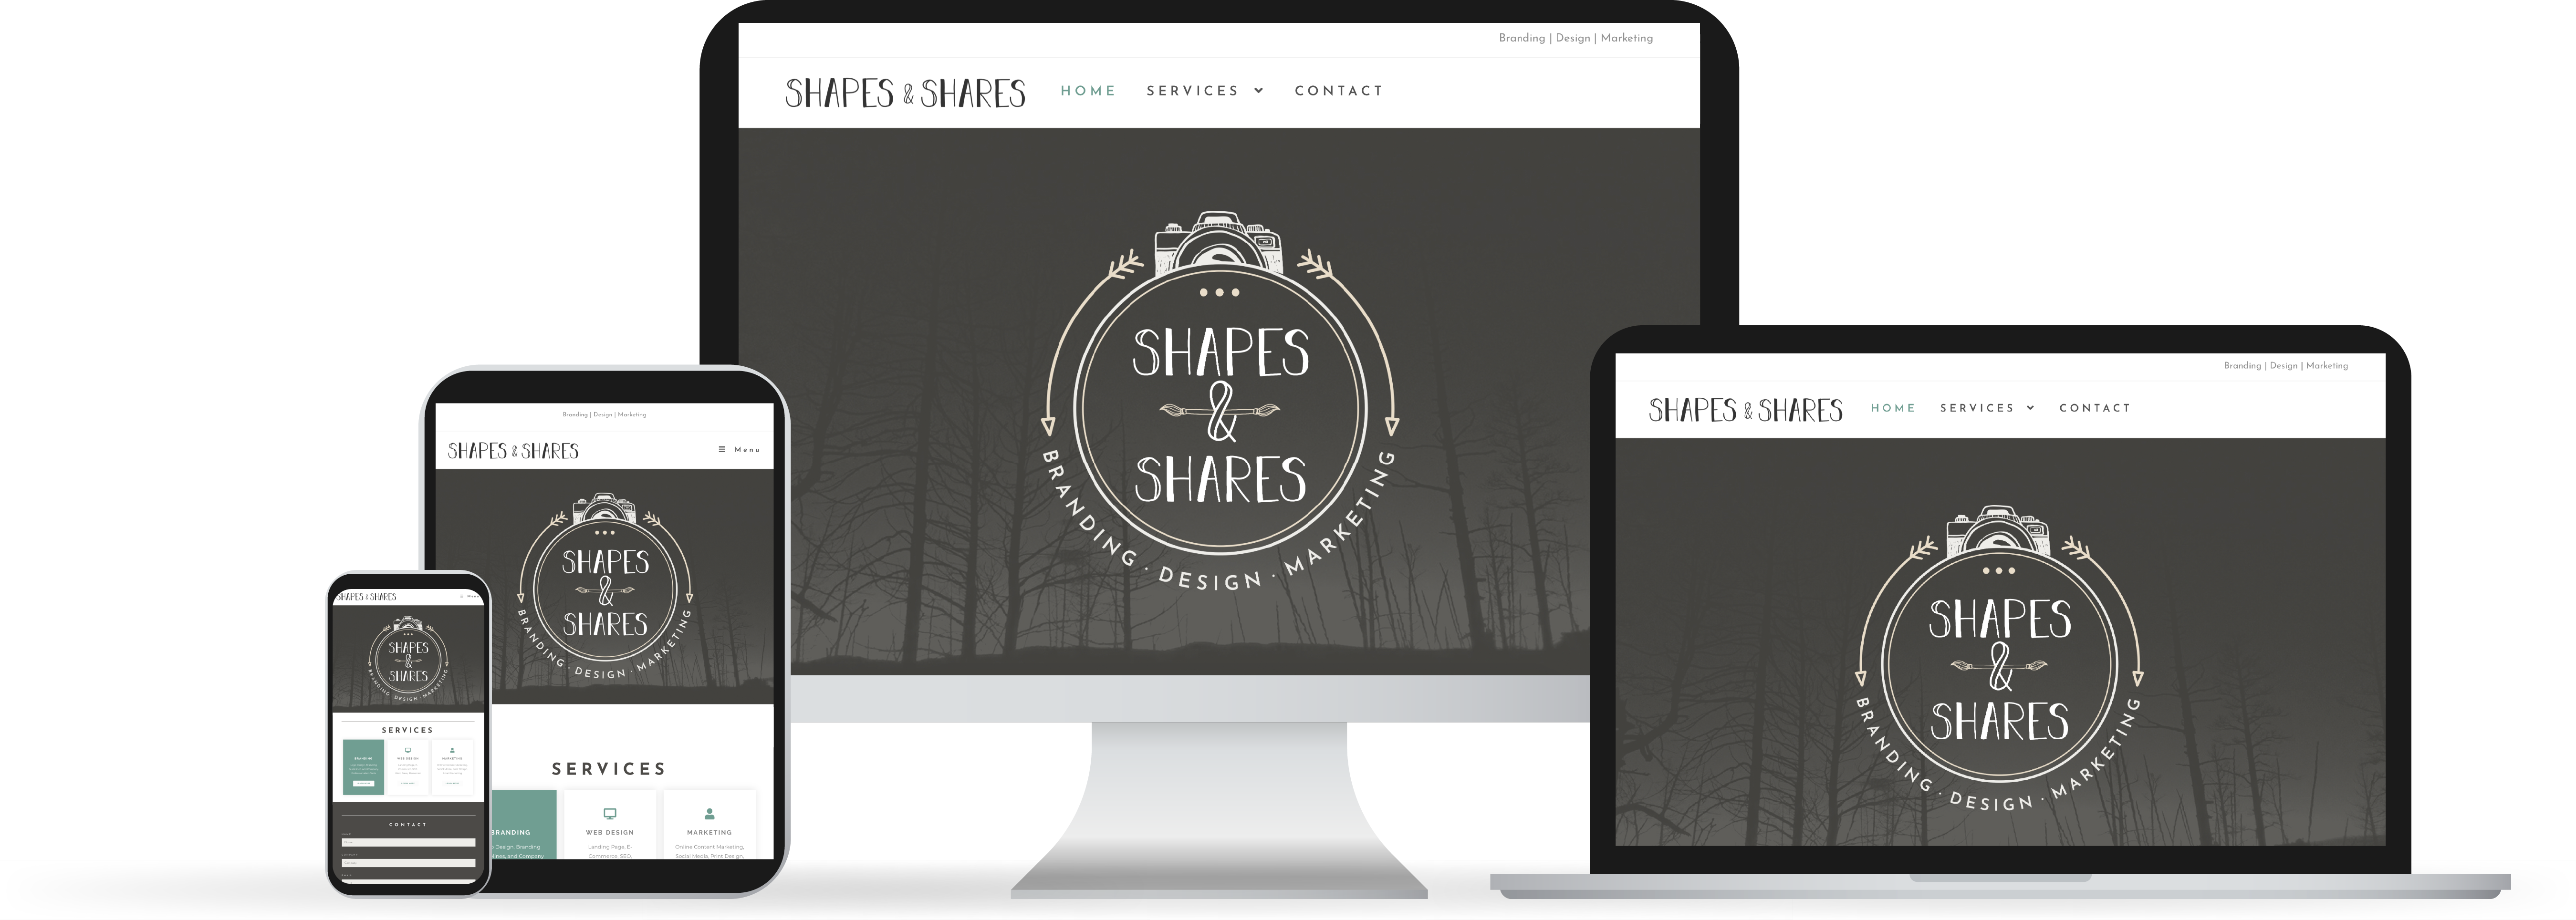 Web Design Shapes & Shares